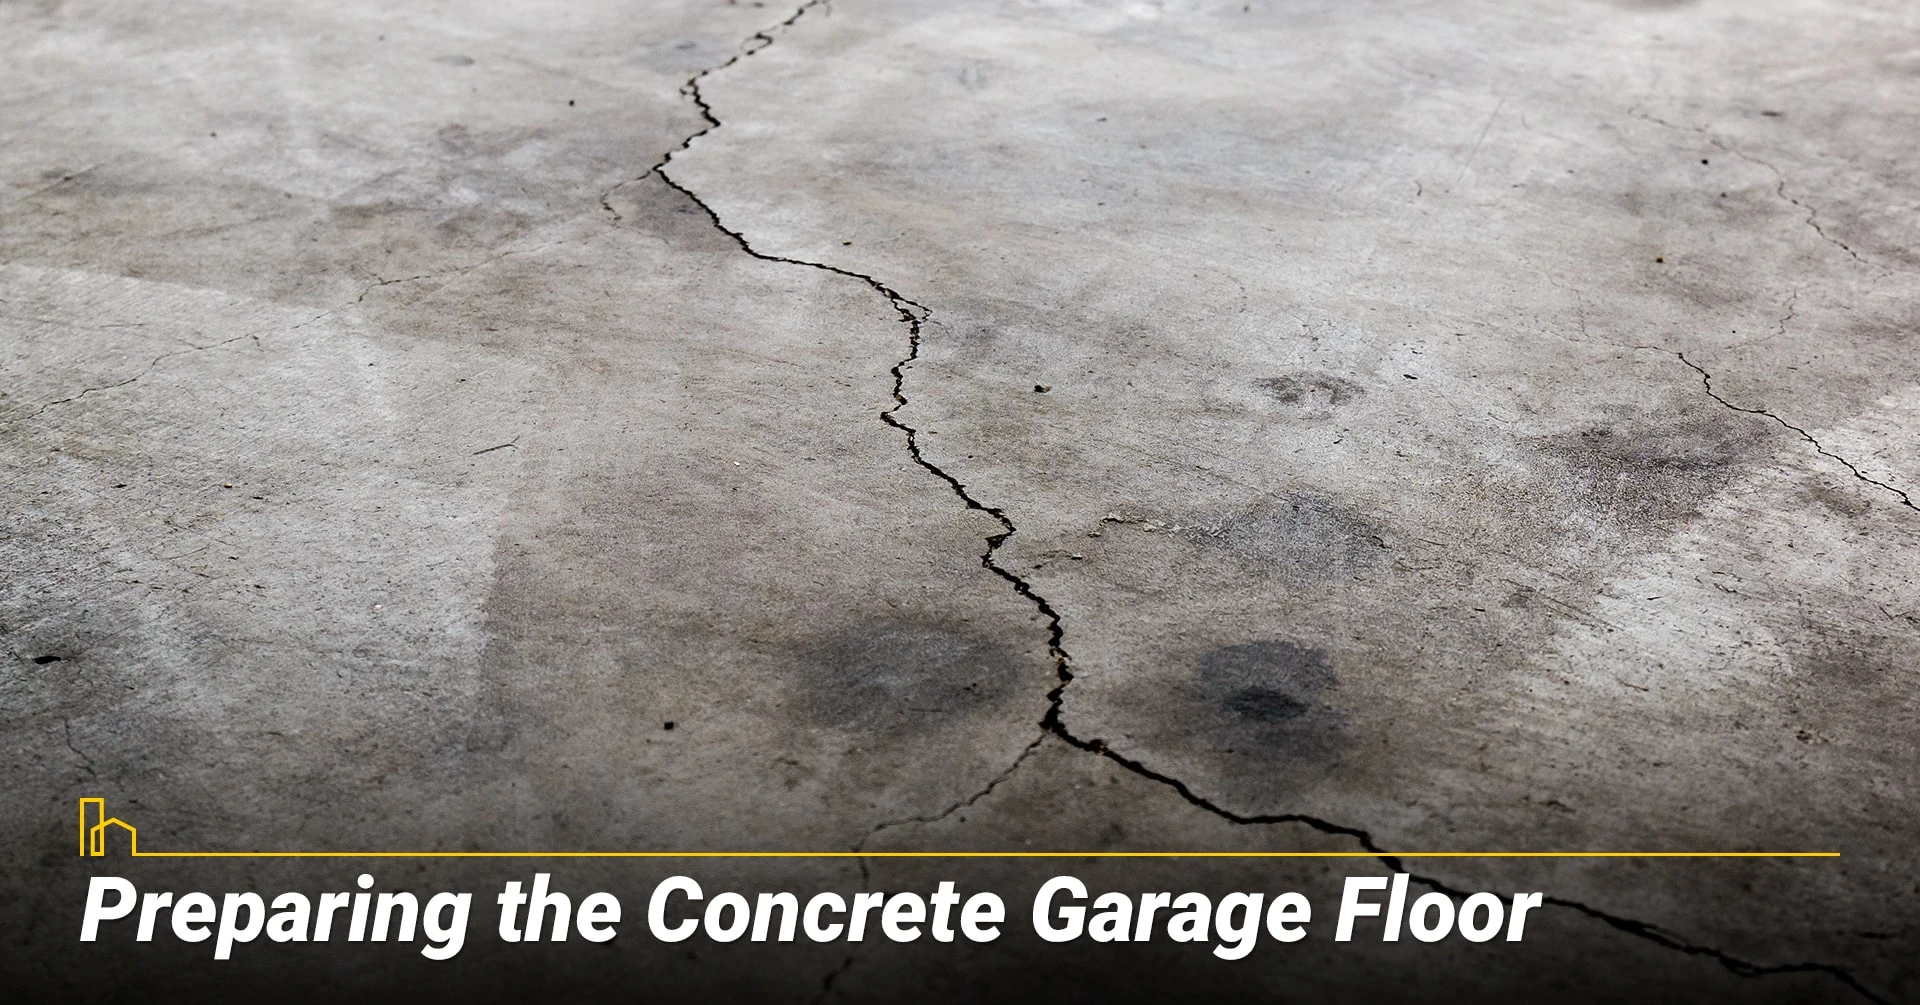 Preparing the Concrete Garage Floor